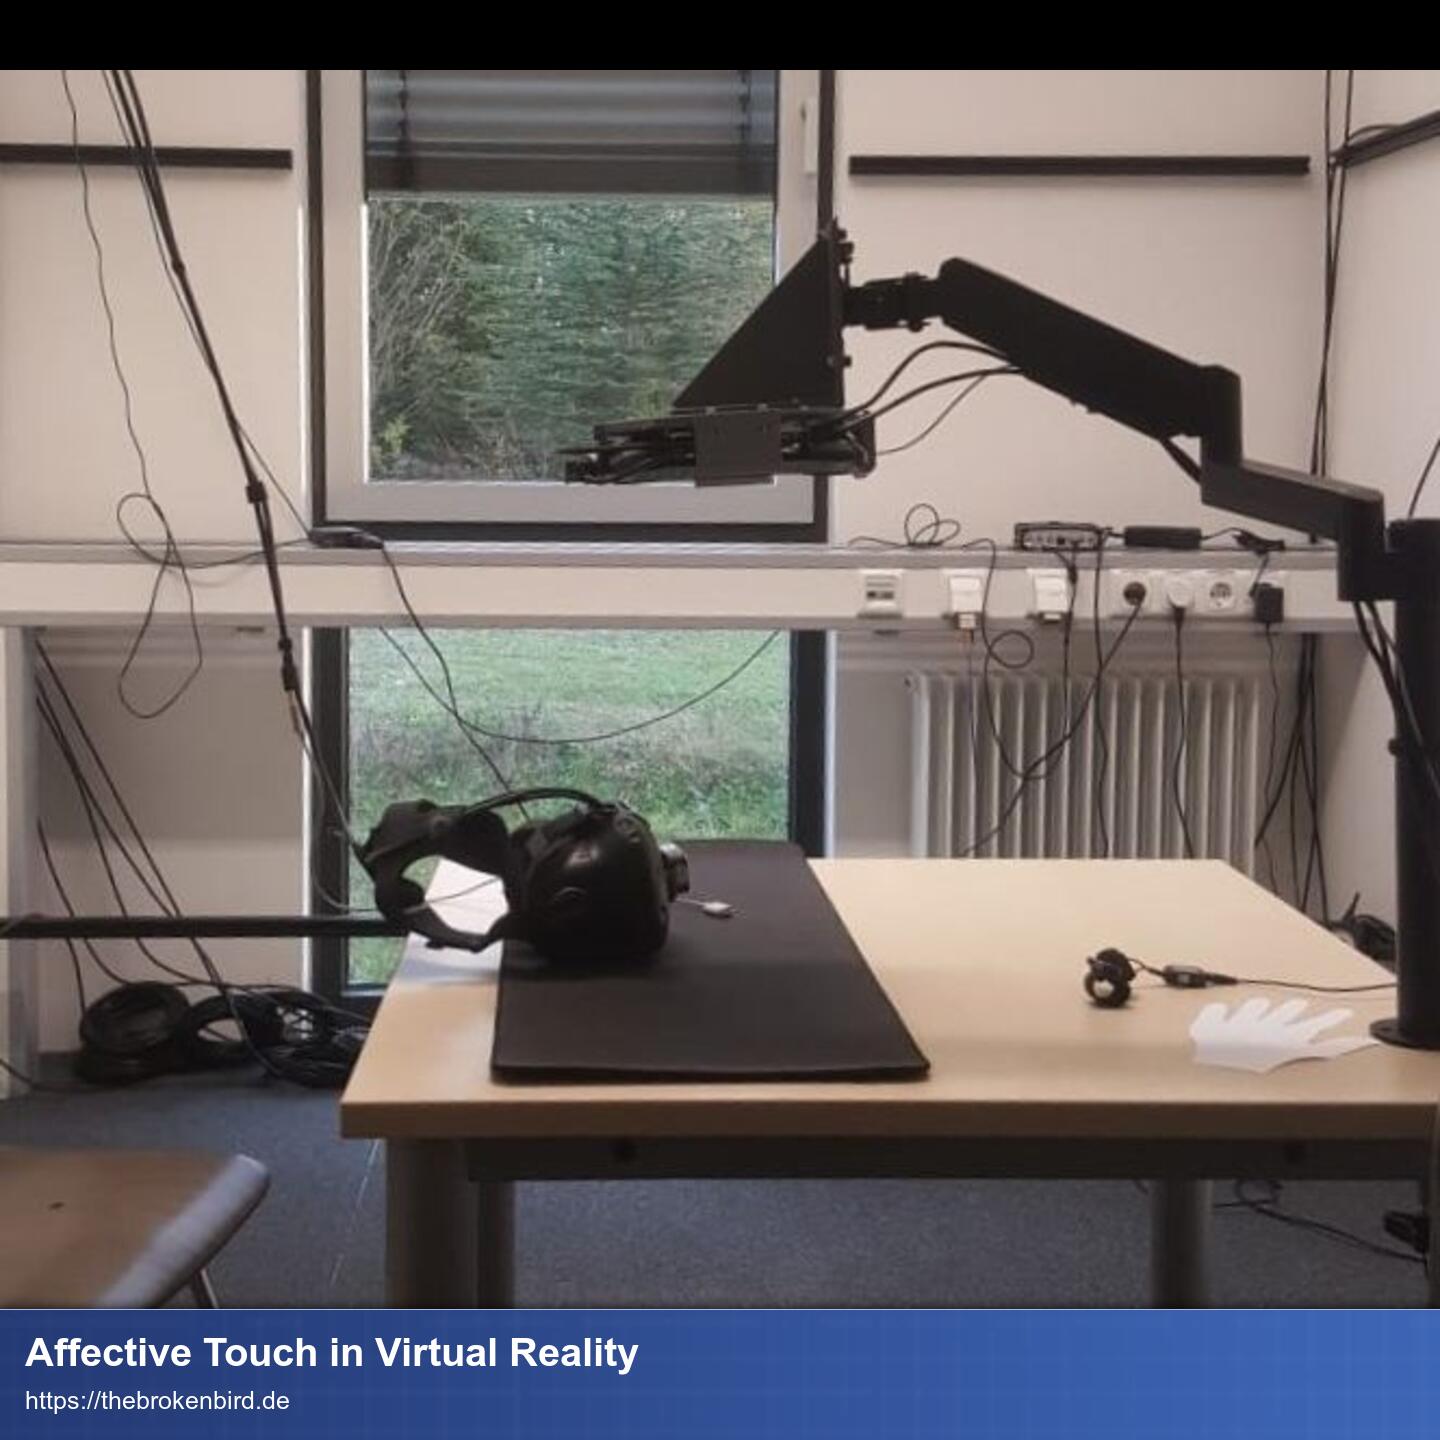 Ein Tisch von der Seite. Auf dem Tisch liegt ein VR-Headset und am Tisch ist ein Aufbau mit einem mechanischen Arm, an dessen Ende das UltraSound-Board befestigt ist und zur Tischplatte zeigt.